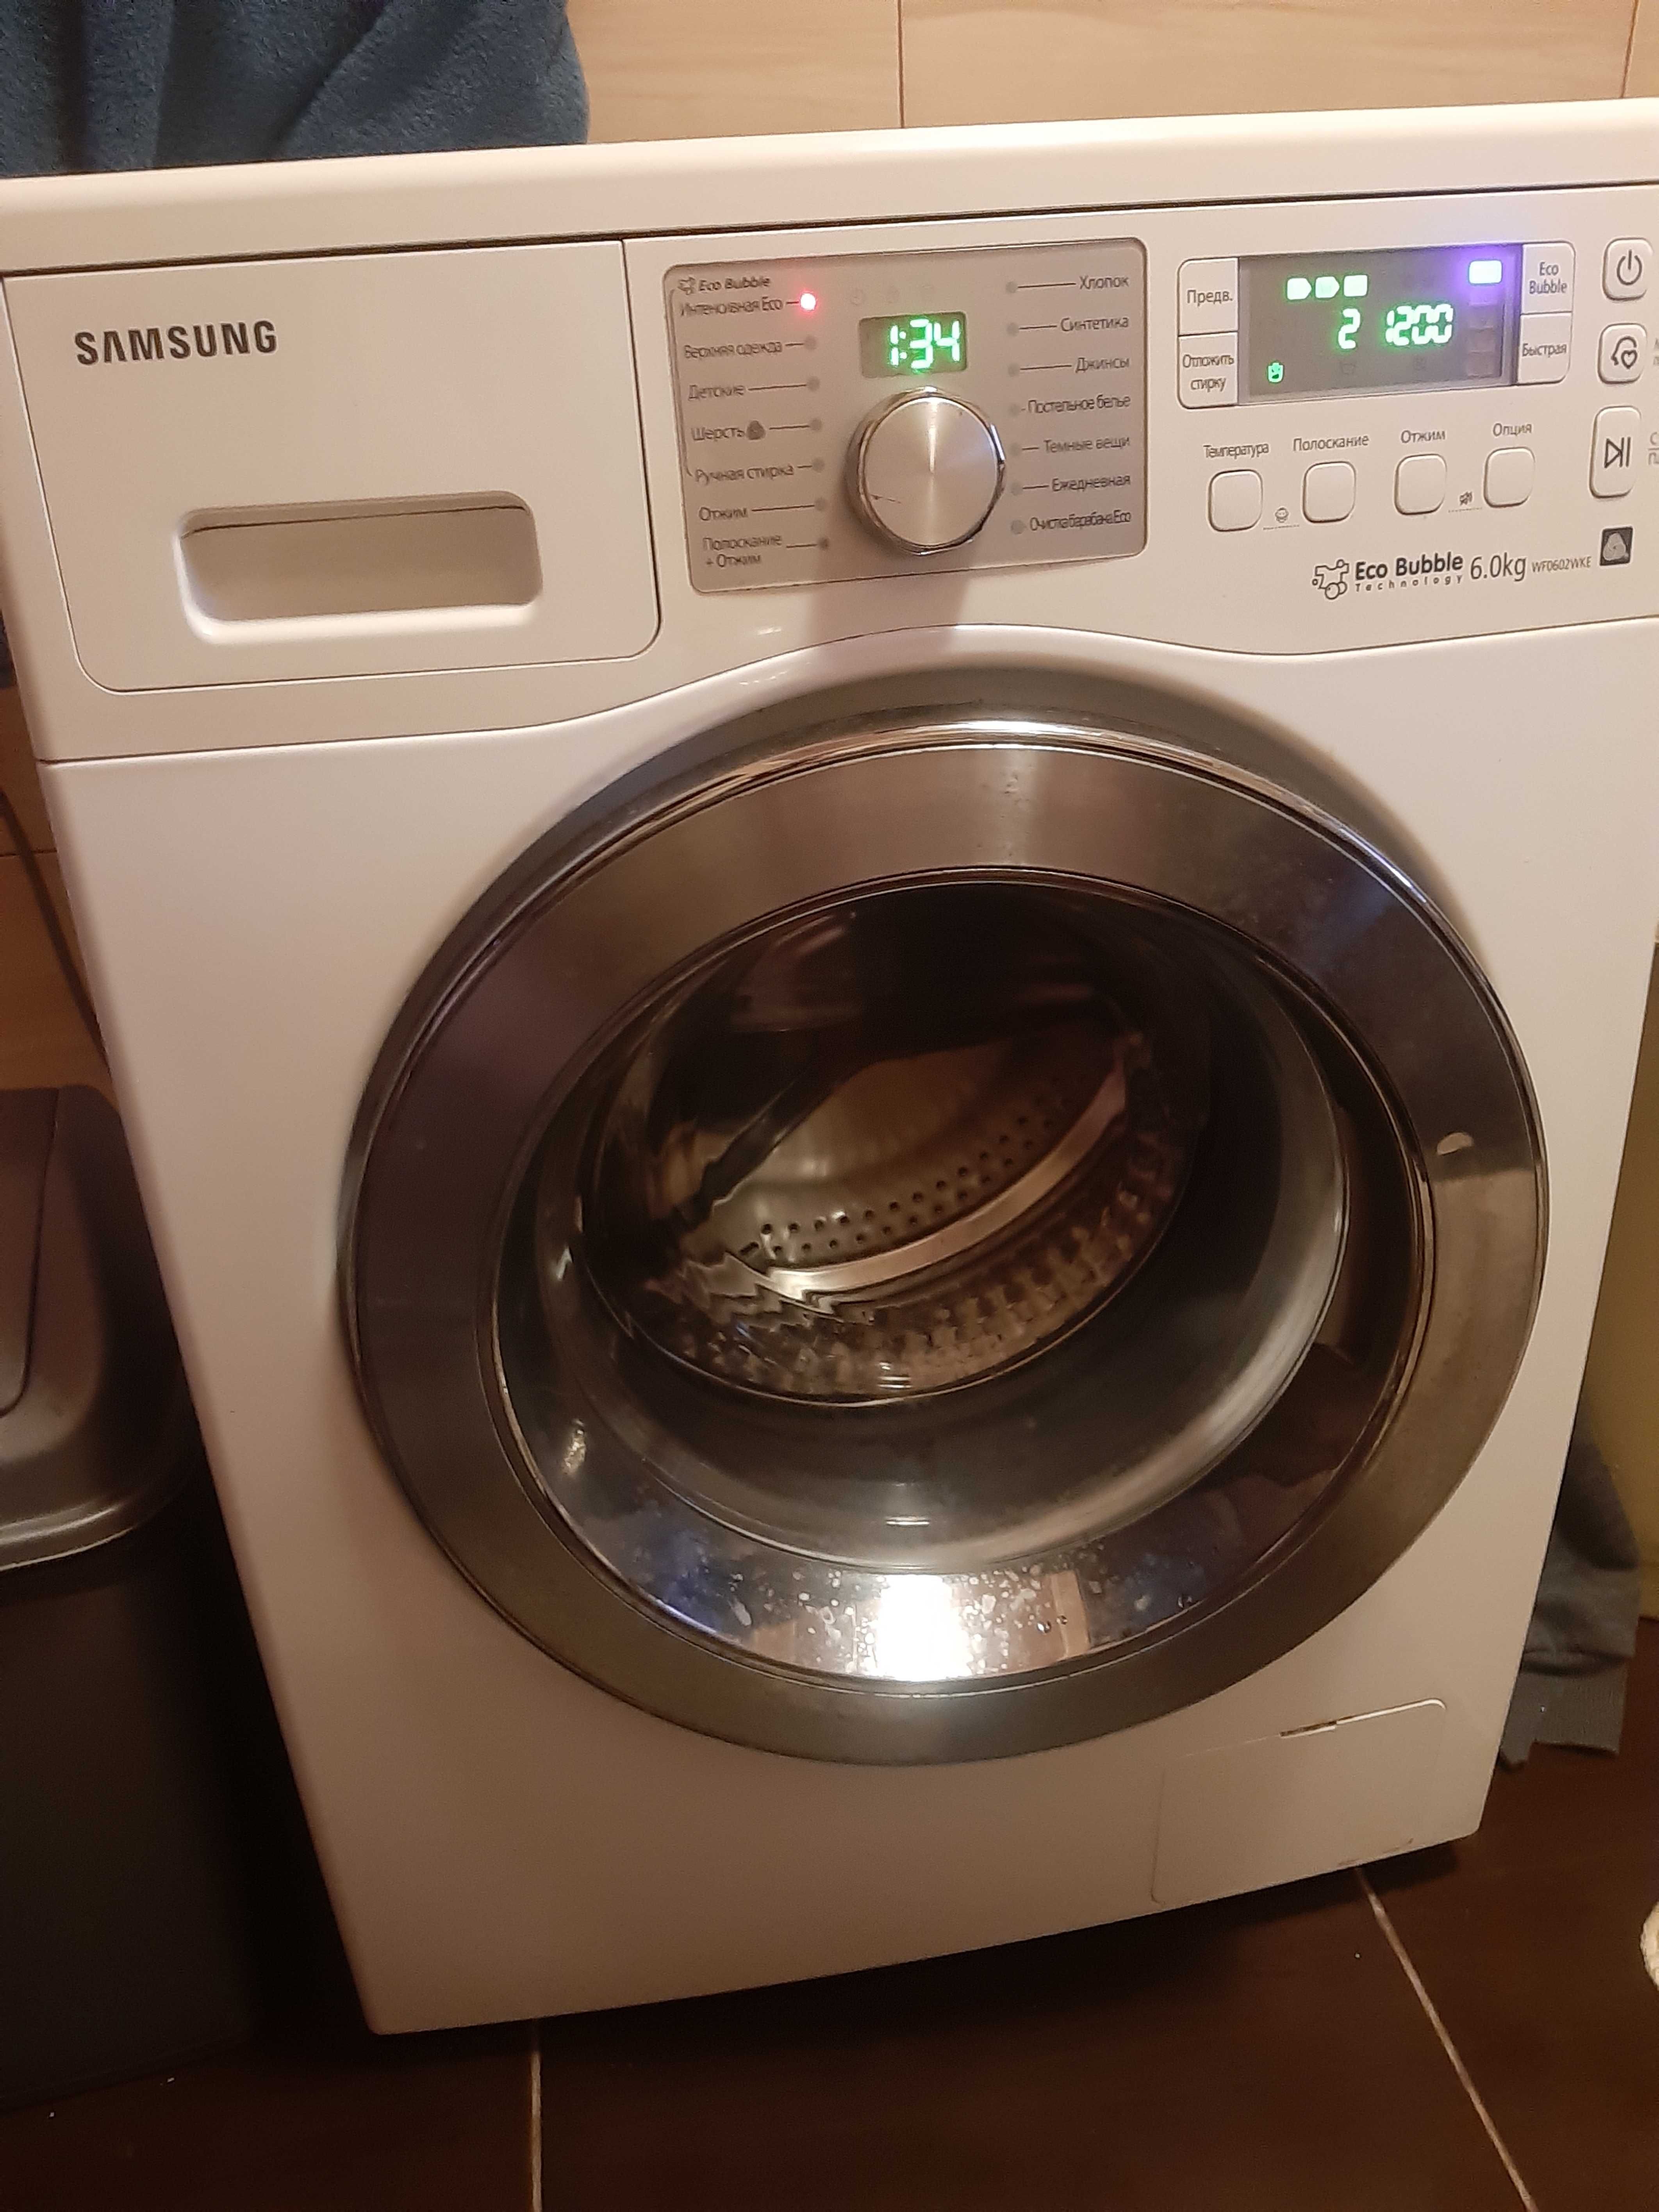 Стиральная машина Samsung,eco bubble,вольт контроль,сушка,6 кг,2019